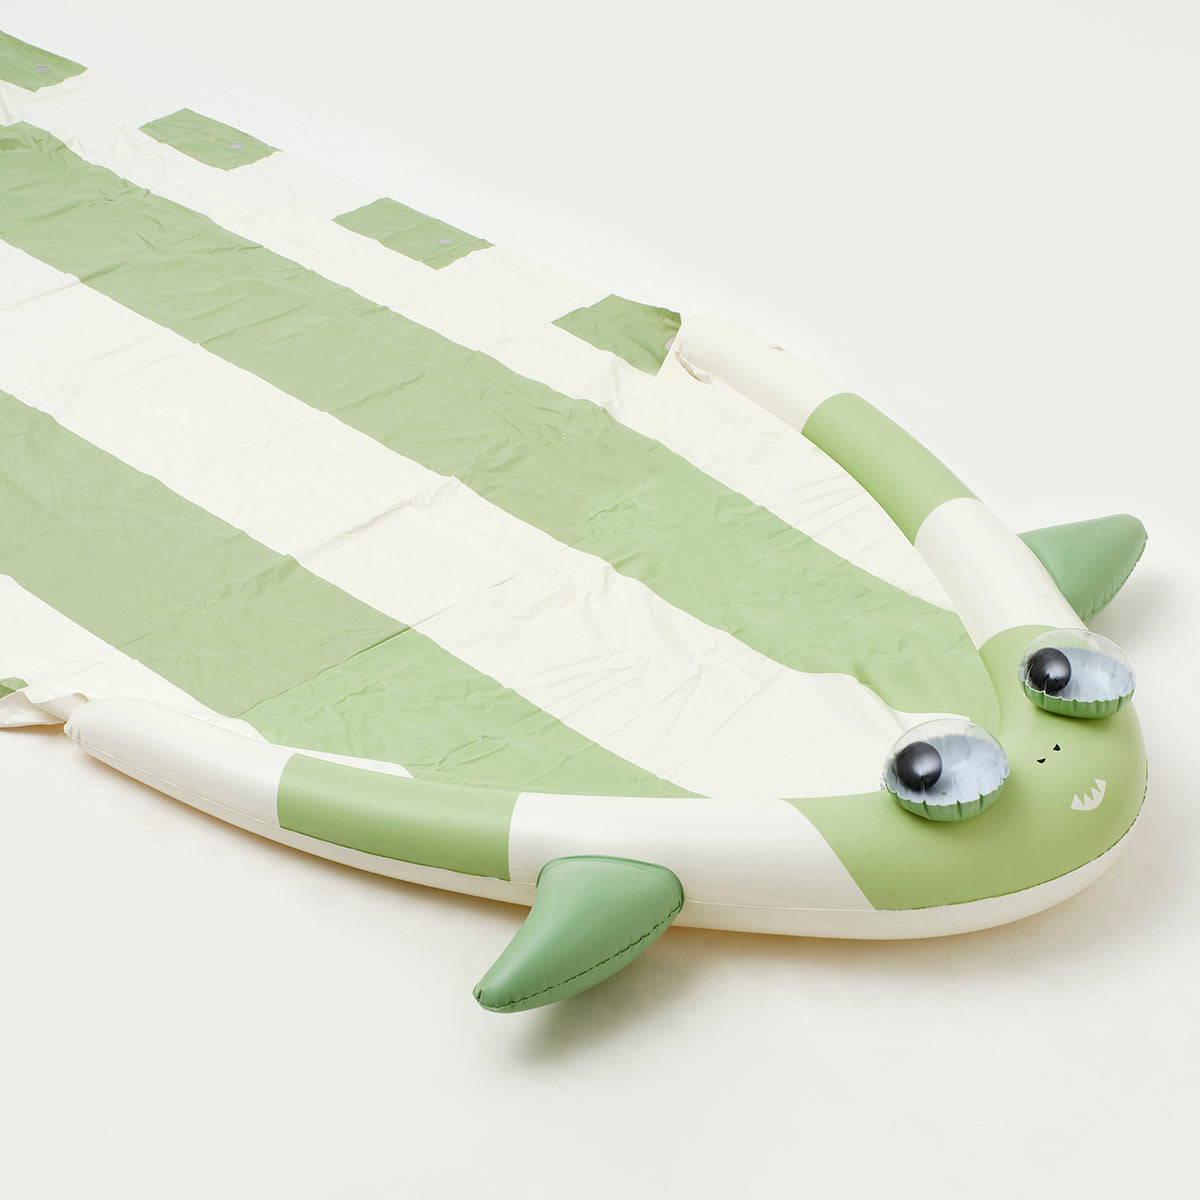 SUNNYLiFE Inflatable Slip and Slide - Shark